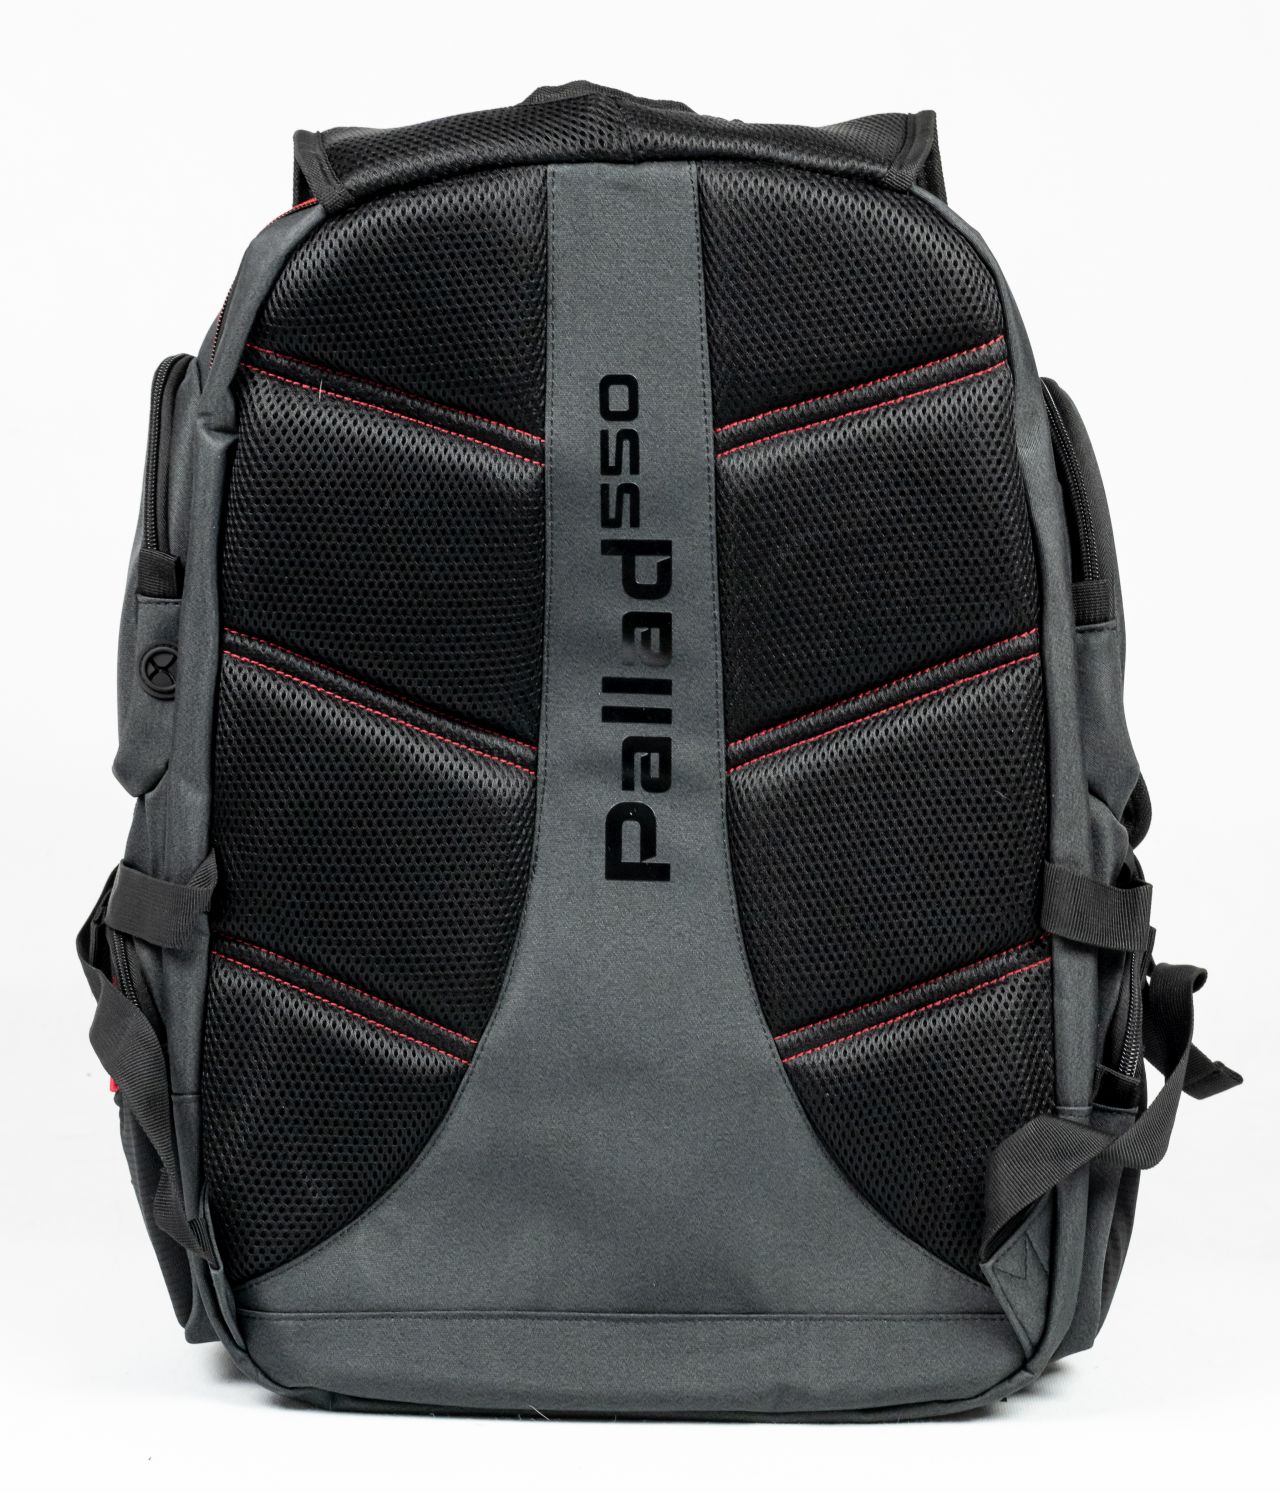 Genesis Pallad 450 Camo oraz Pallad 550 - test gamingowych plecaków